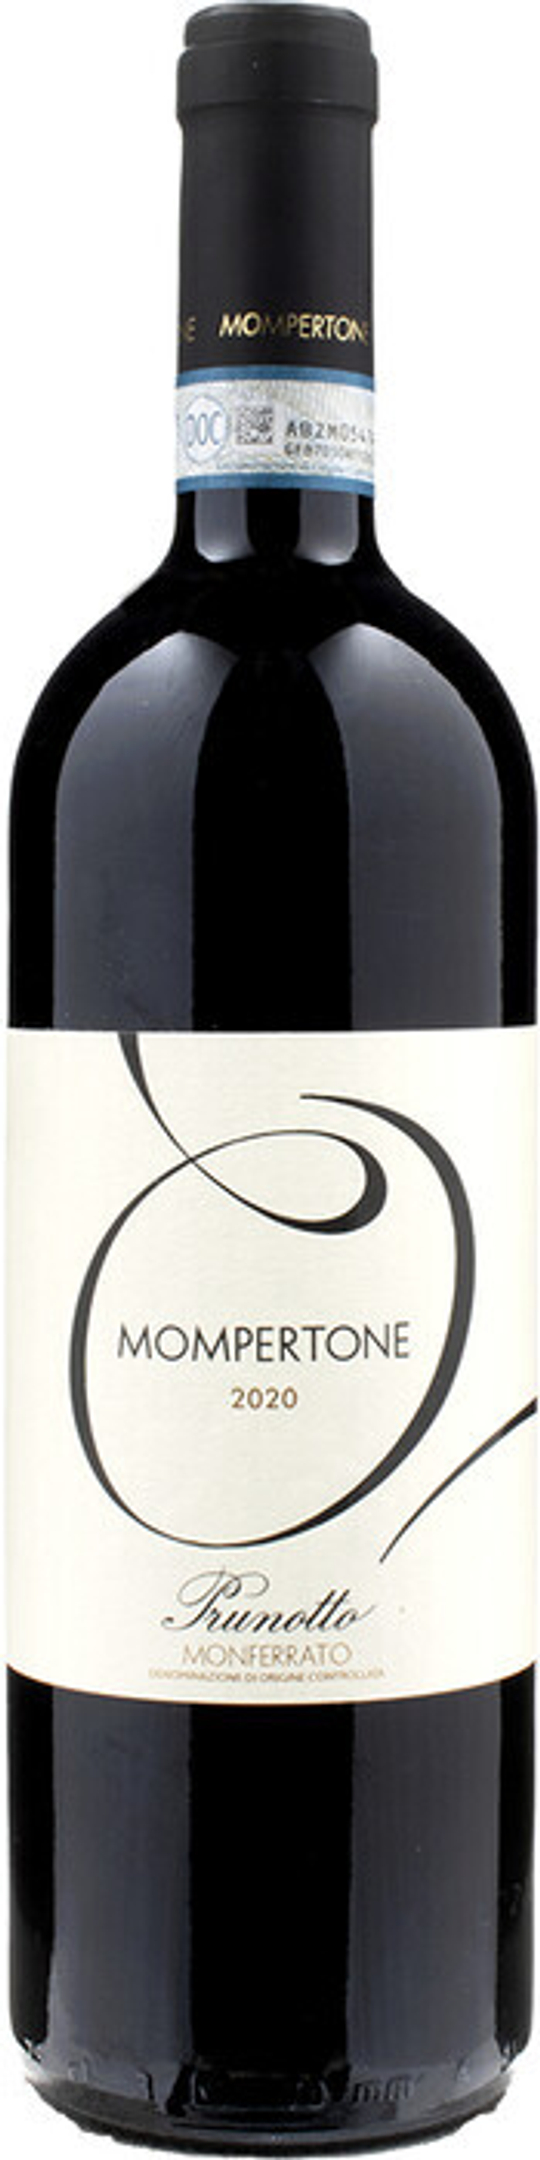 Вино Prunotto Mompertone  Monferrato DOC, 0,75 л.